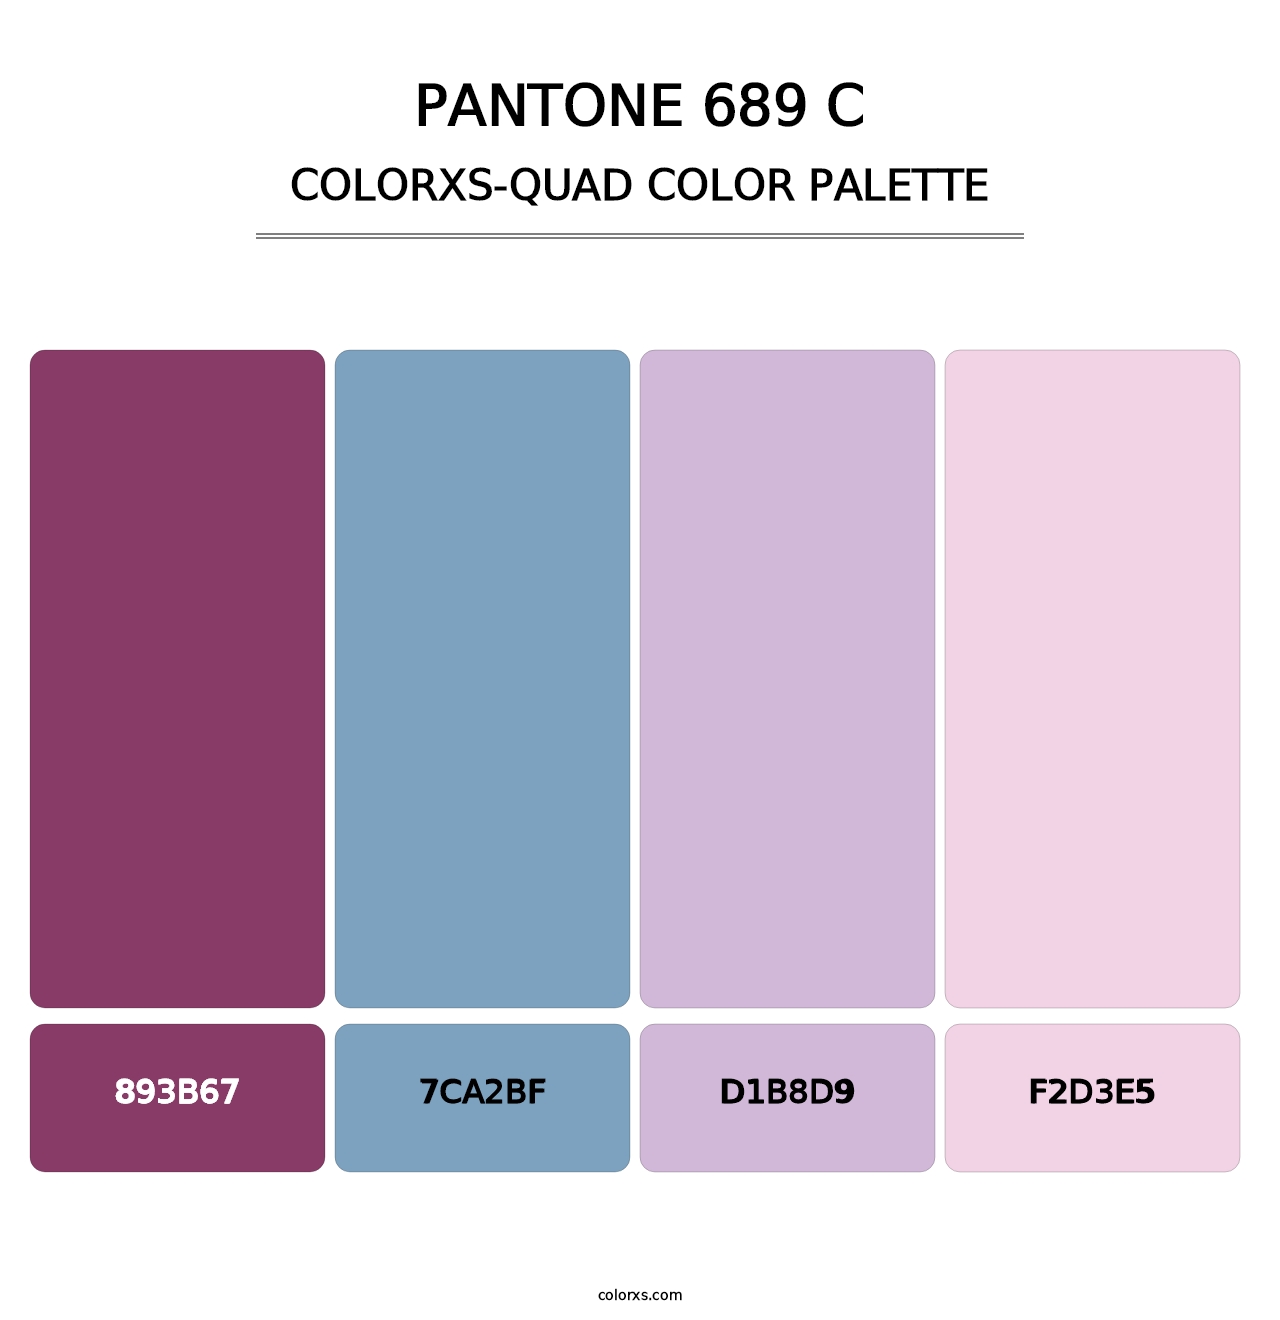 PANTONE 689 C - Colorxs Quad Palette